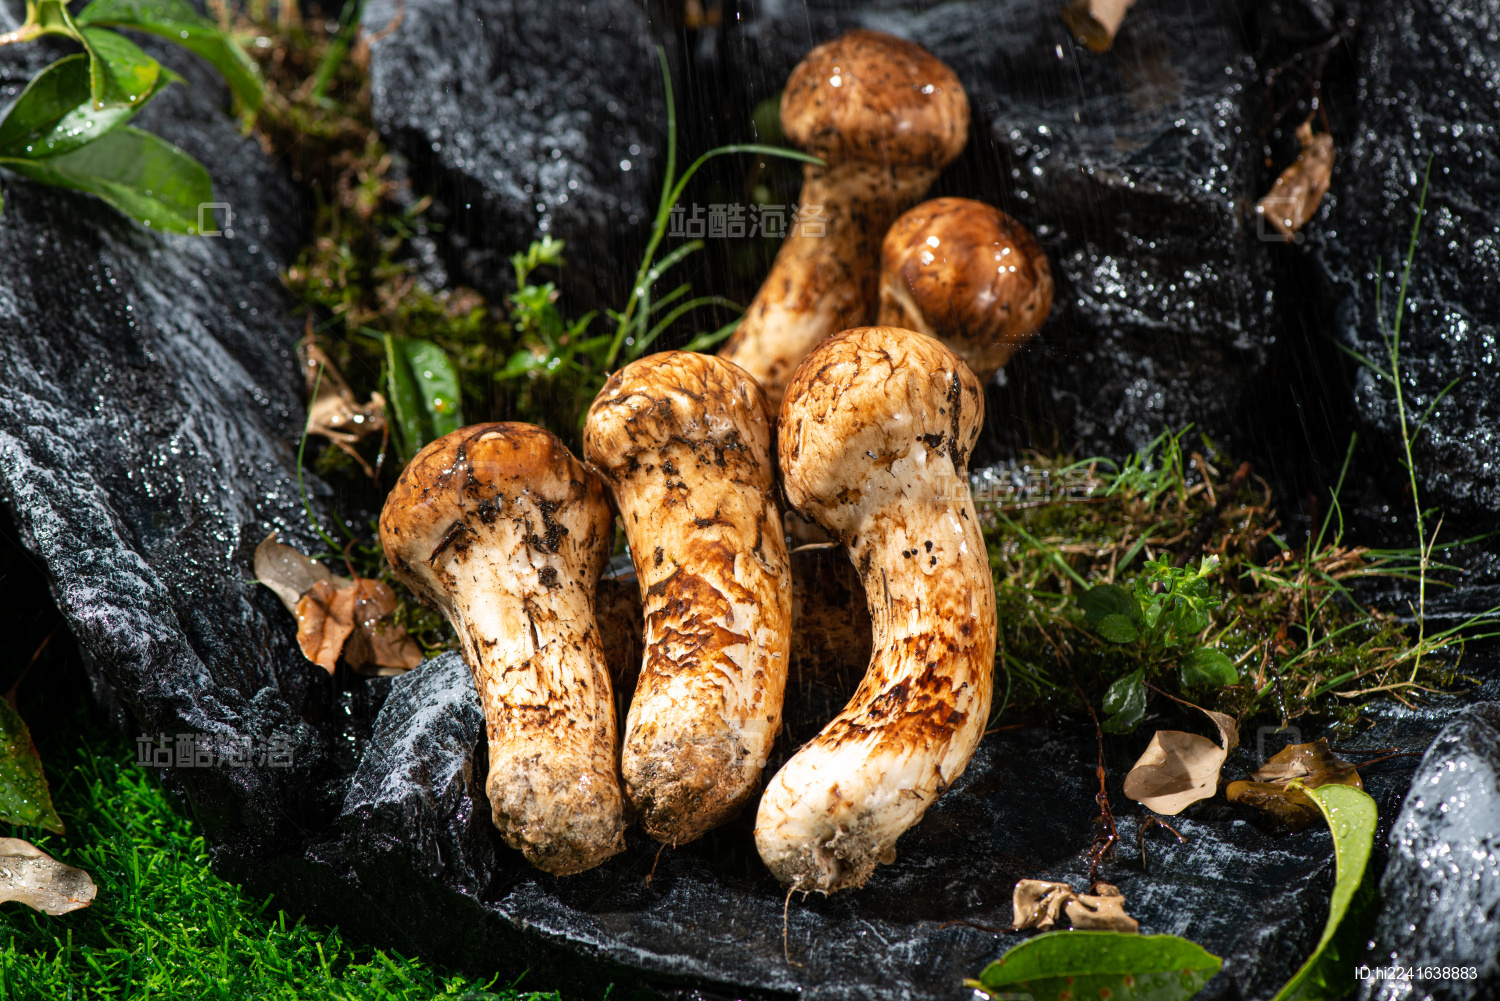 鲜松茸菌蘑菇 1公斤新鲜松茸云南产地批发鲜松茸7-9cm食用菌食材-阿里巴巴